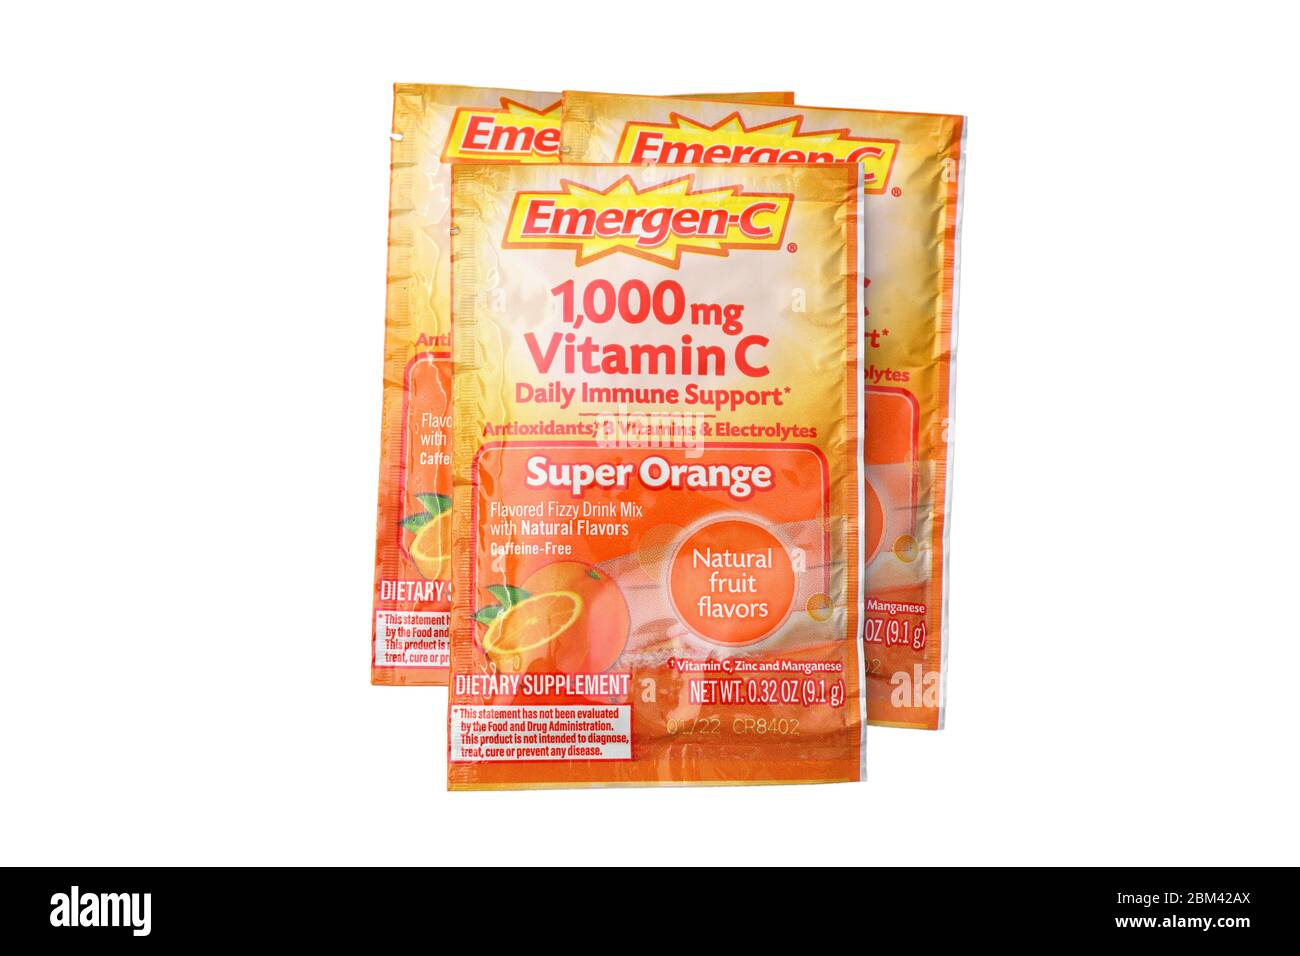 Pakete von 1000mg Emergen-C Vitamin C Nahrungsergänzungsmittel isoliert auf einem weißen Hintergrund. Ausschnitt Bild für Illustration und redaktionelle Verwendung. Stockfoto